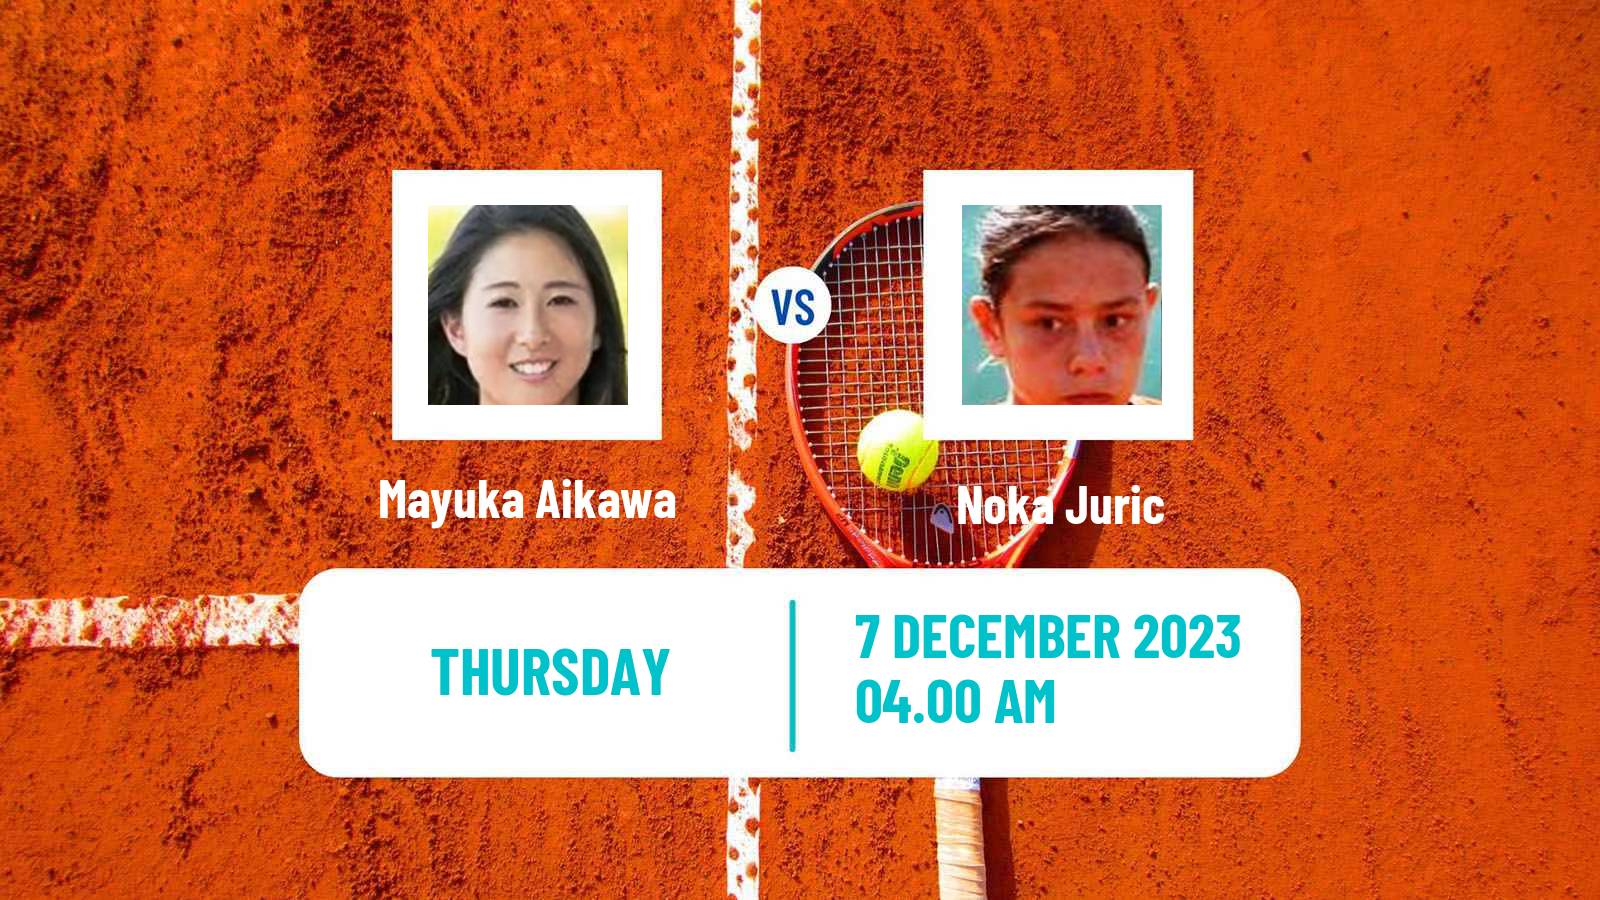 Tennis ITF W15 Antalya 21 Women Mayuka Aikawa - Noka Juric